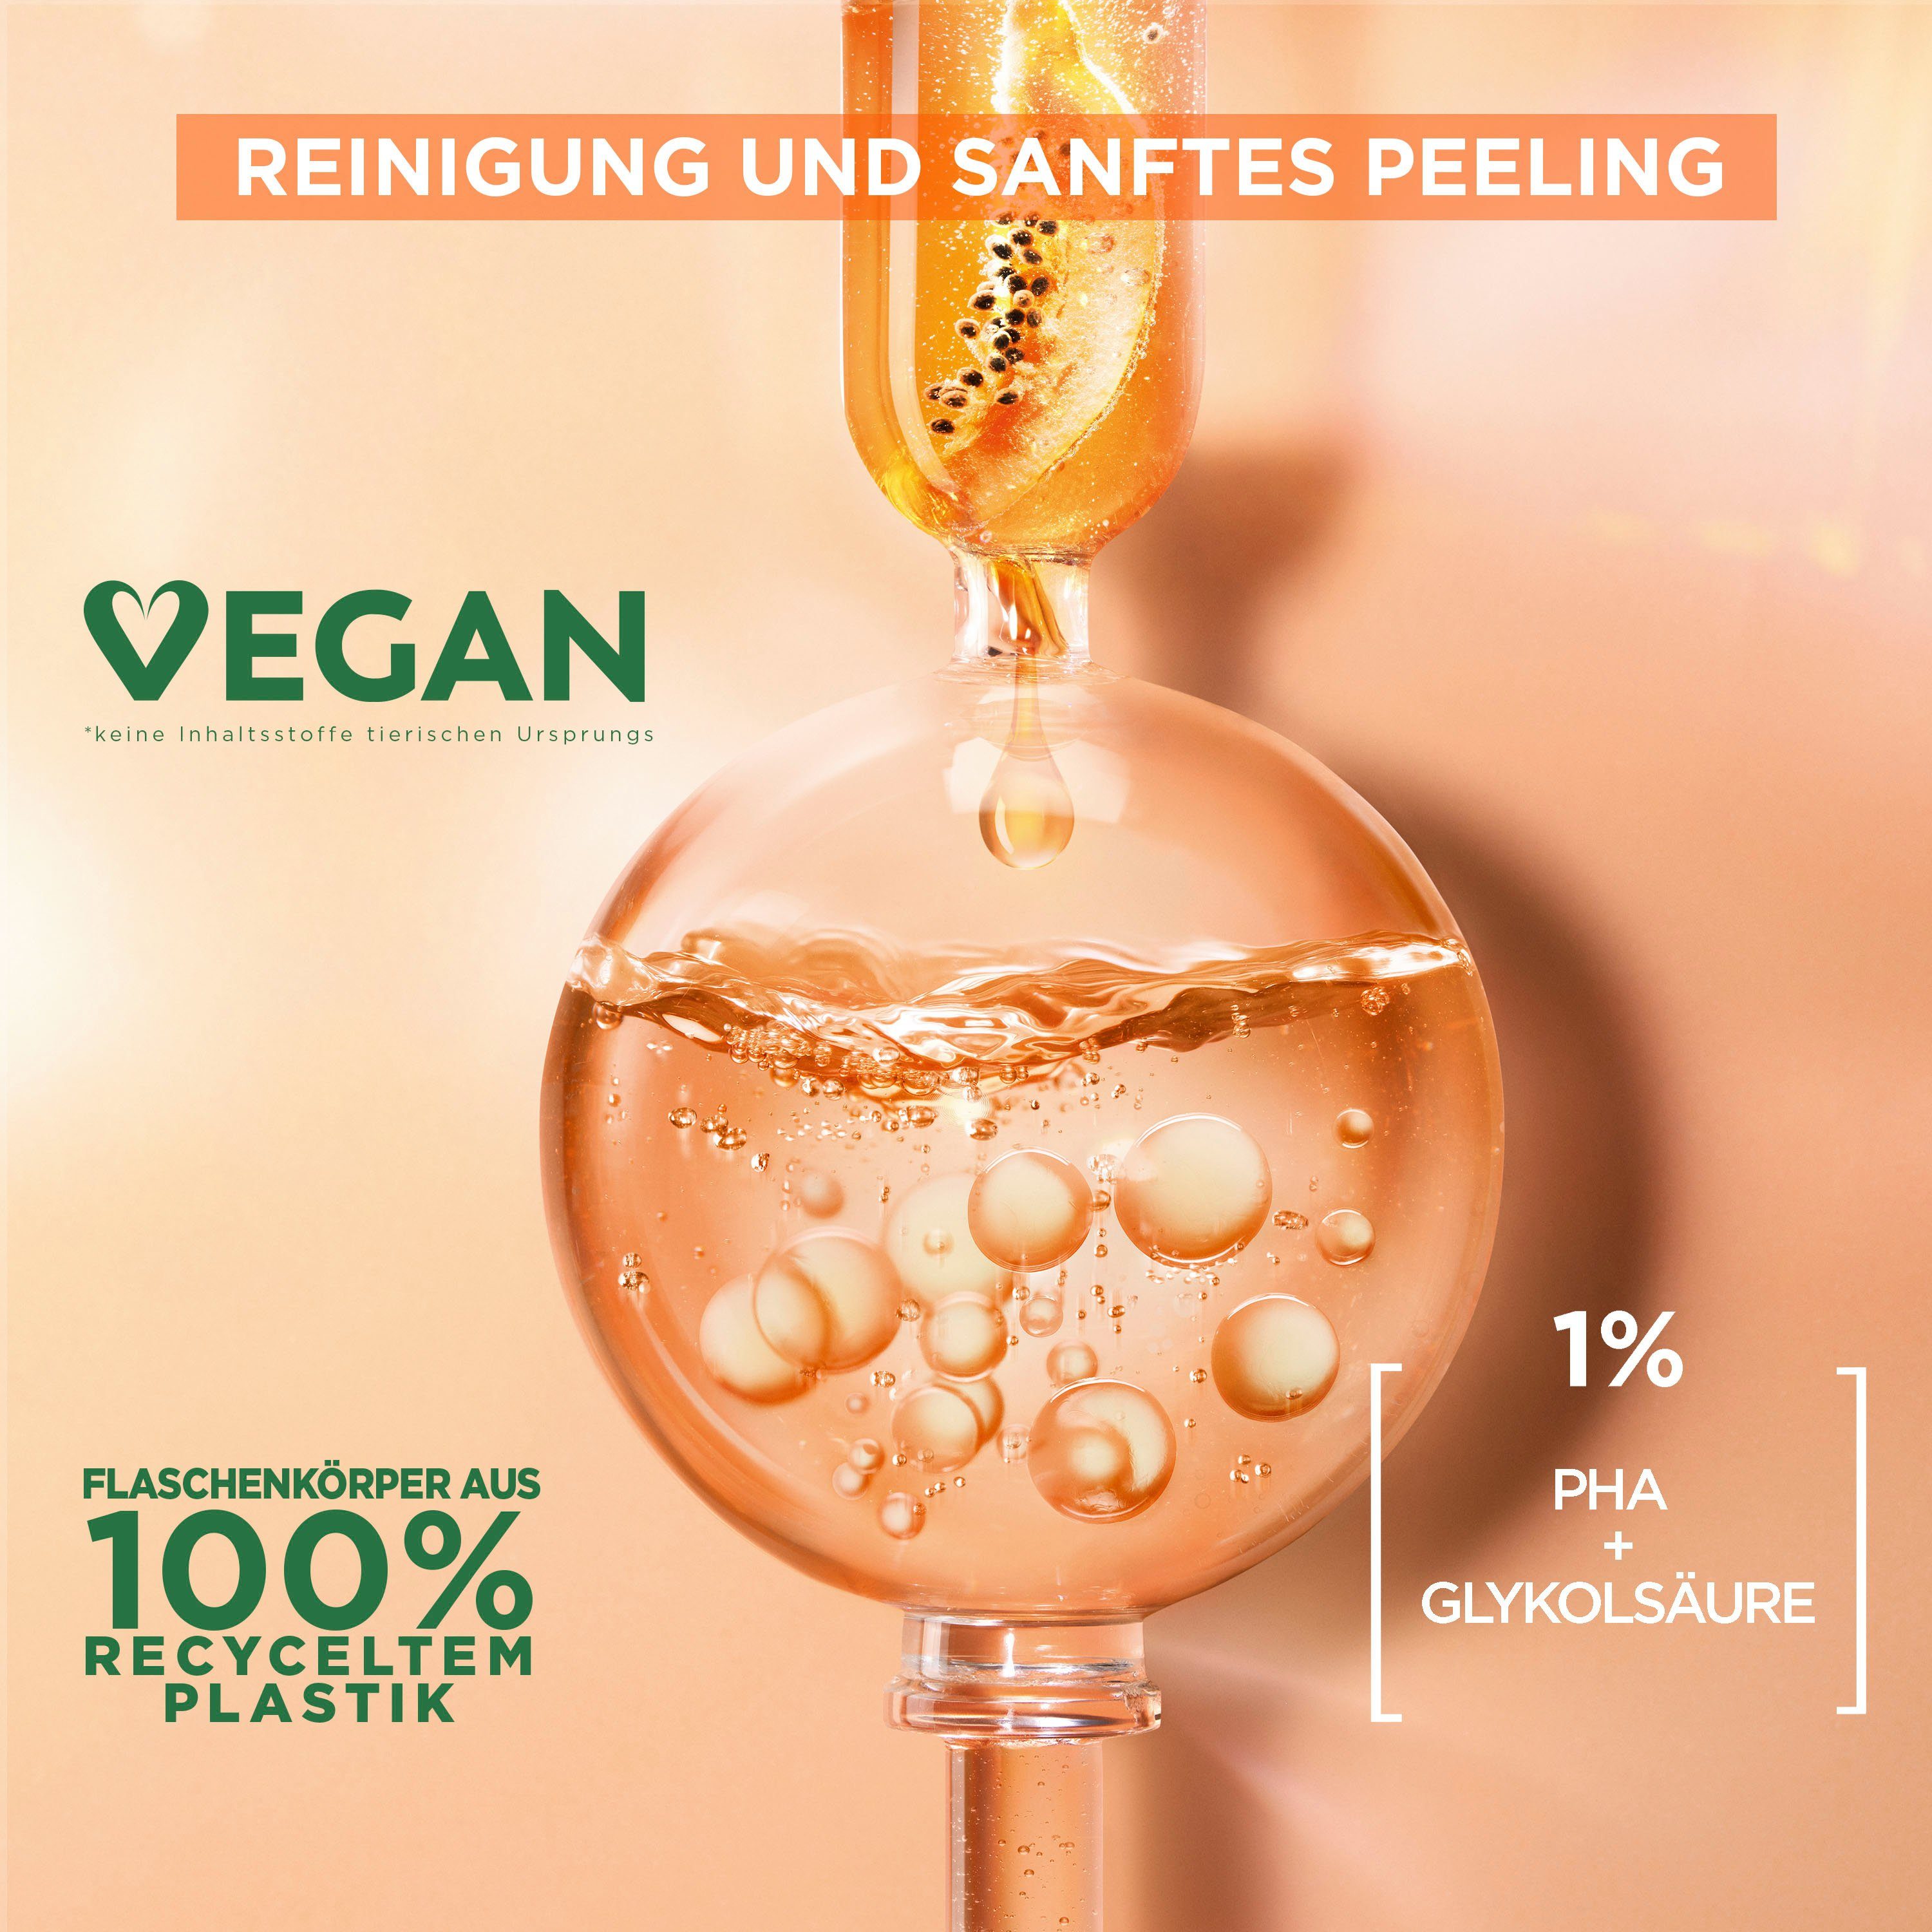 GARNIER Gesichtspflege Garnier Sanftes Peelingwasser Mizellen